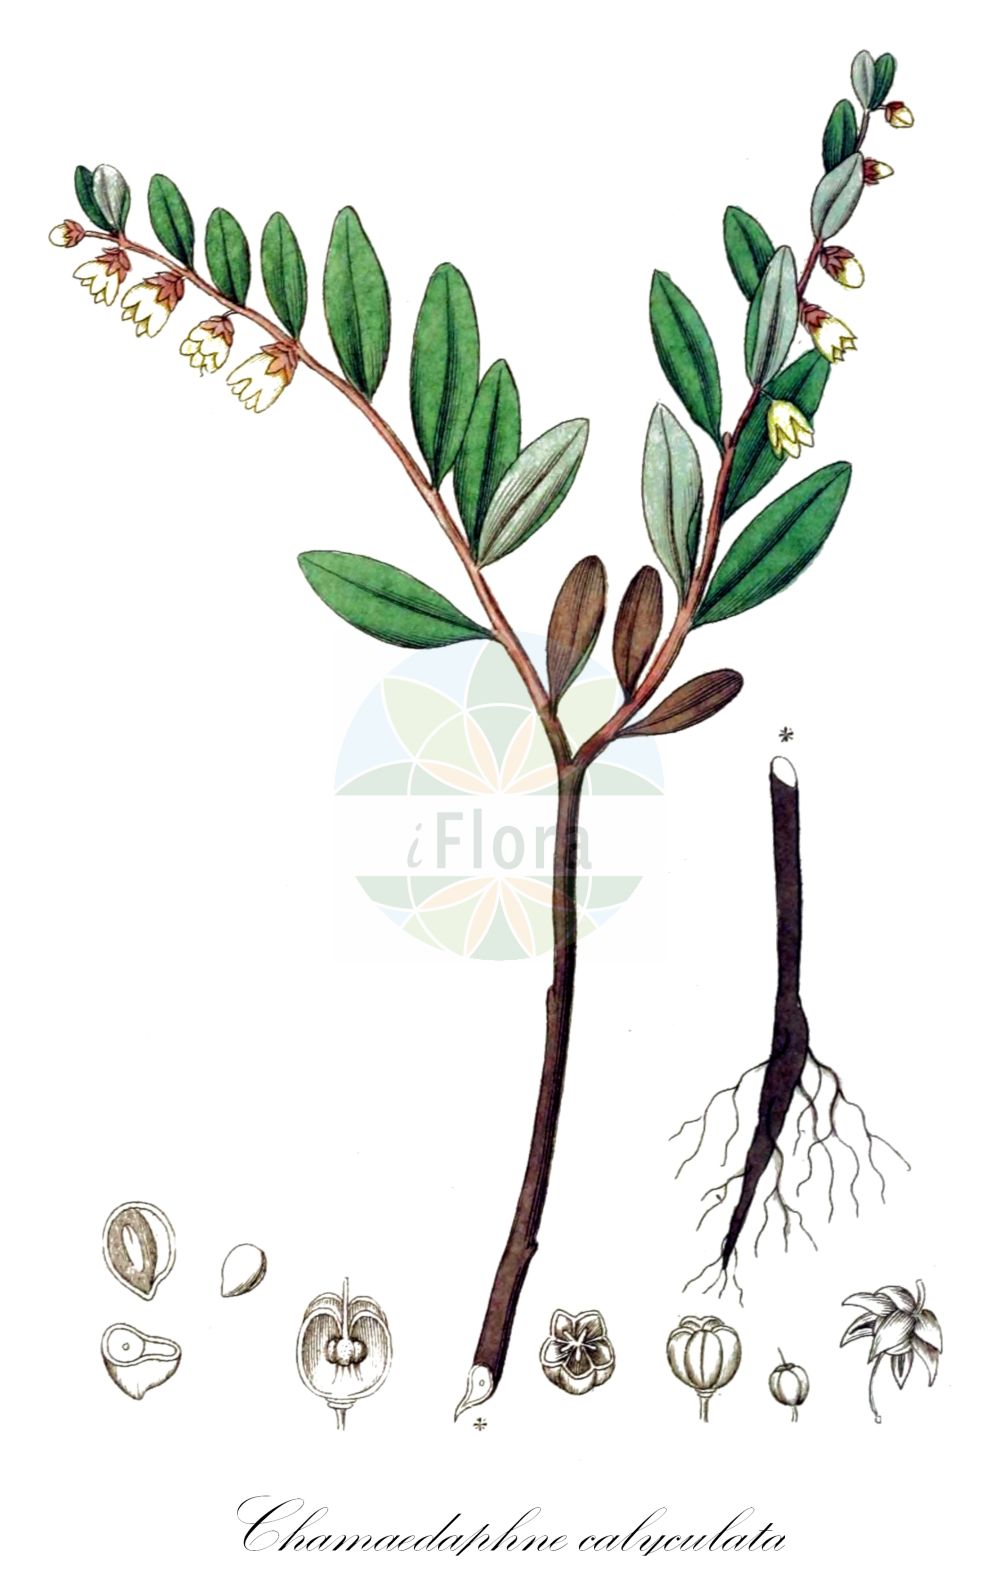 Historische Abbildung von Chamaedaphne calyculata (Torfgränke - Leather-leaf). Das Bild zeigt Blatt, Bluete, Frucht und Same. ---- Historical Drawing of Chamaedaphne calyculata (Torfgränke - Leather-leaf). The image is showing leaf, flower, fruit and seed.(Chamaedaphne calyculata,Torfgränke,Leather-leaf,Andromeda calyculata,Cassandra calyculata,Chamaedaphne calyculata,Torfgraenke,Leather-leaf,Chamaedaphne,Zwerglorbeer,Leatherleaf,Ericaceae,Heidekrautgewächse,Heath family,Blatt,Bluete,Frucht,Same,leaf,flower,fruit,seed,Svensk Botanik (Svensk Botanik))